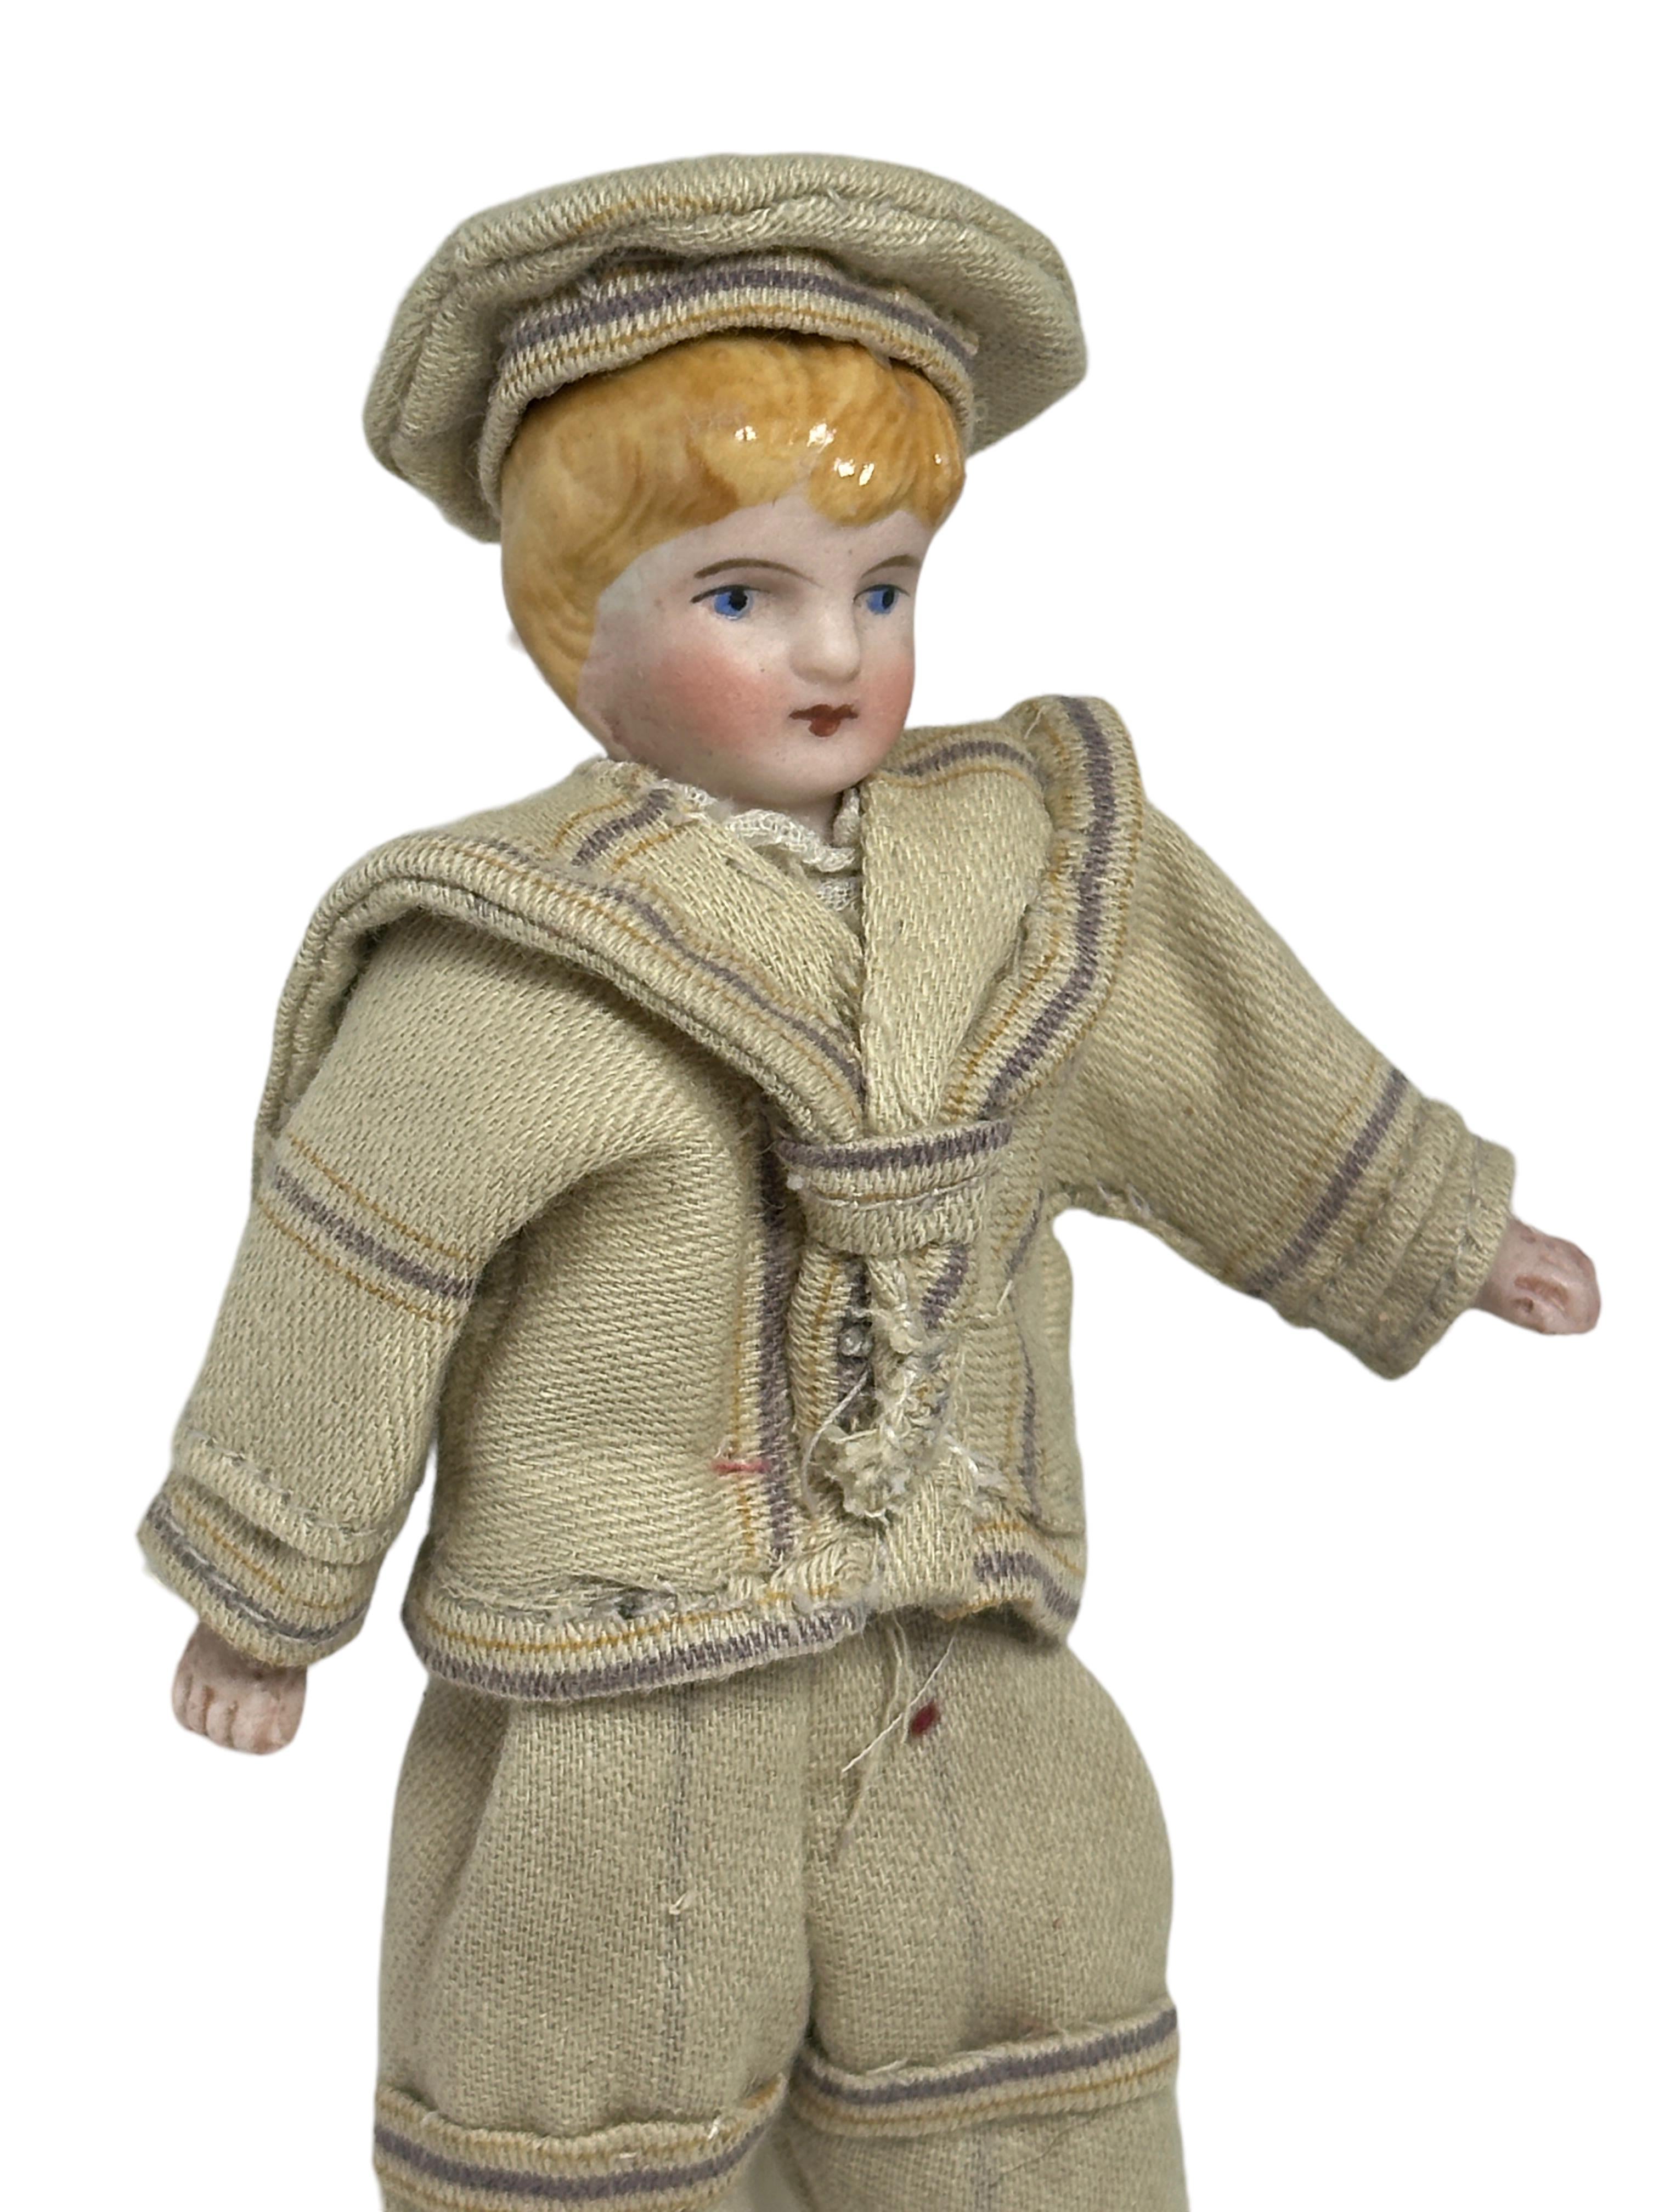 sailor doll antique